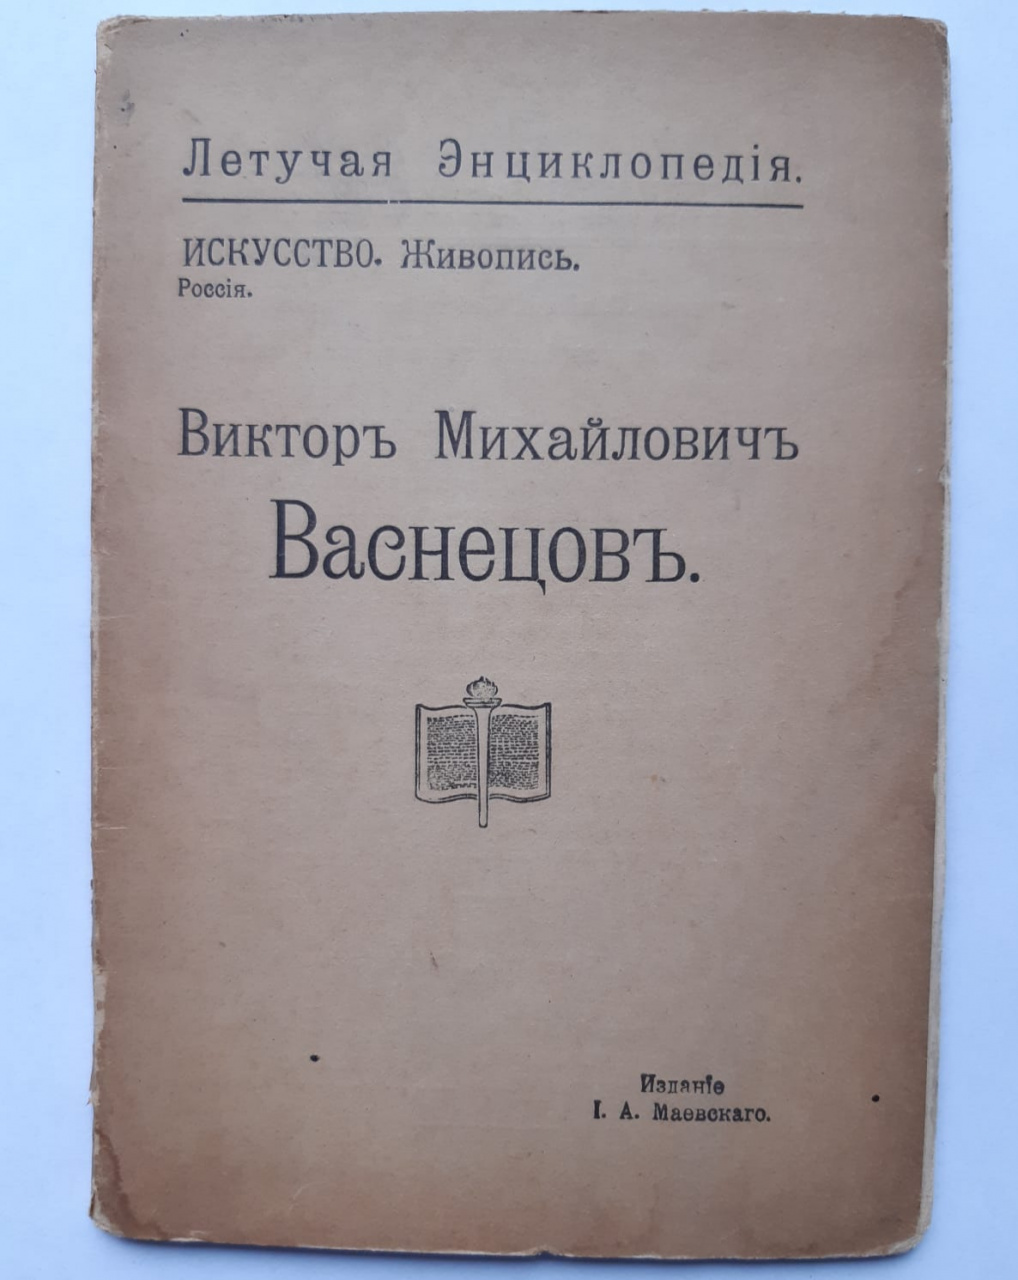 Книга-брошюра "В.М. Васнецов".